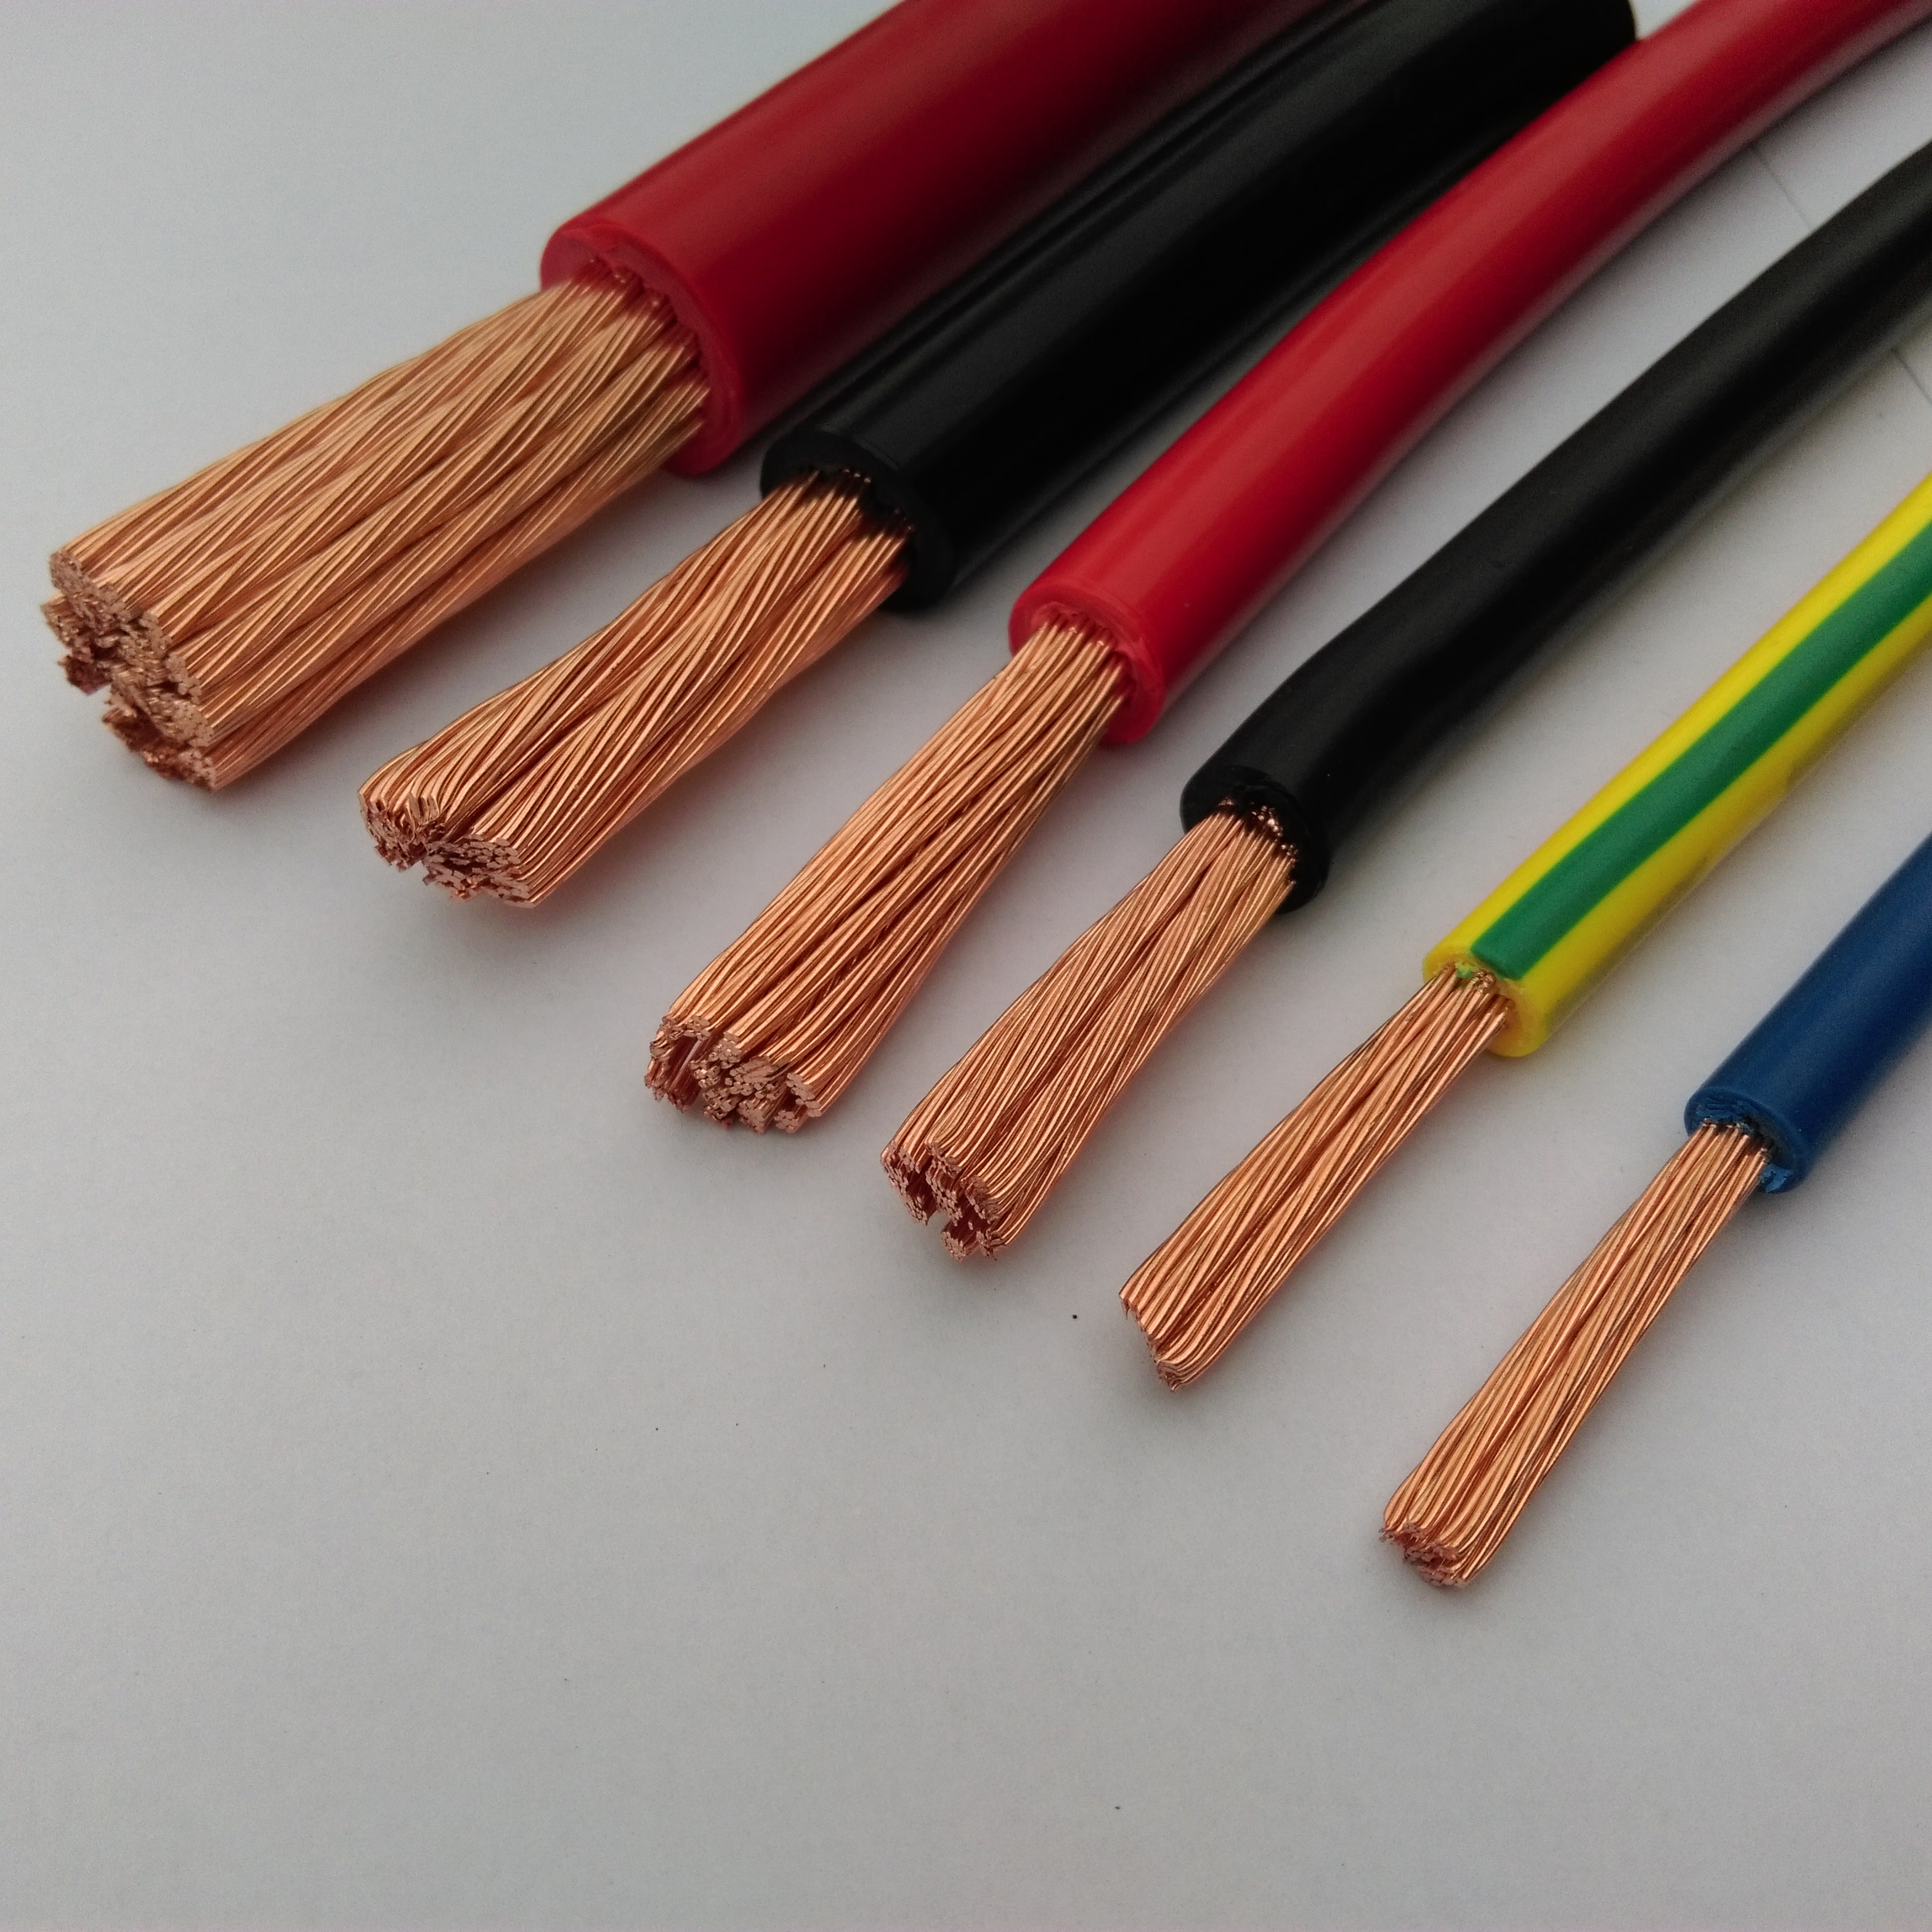 低压电缆_电线_电缆_电力电缆